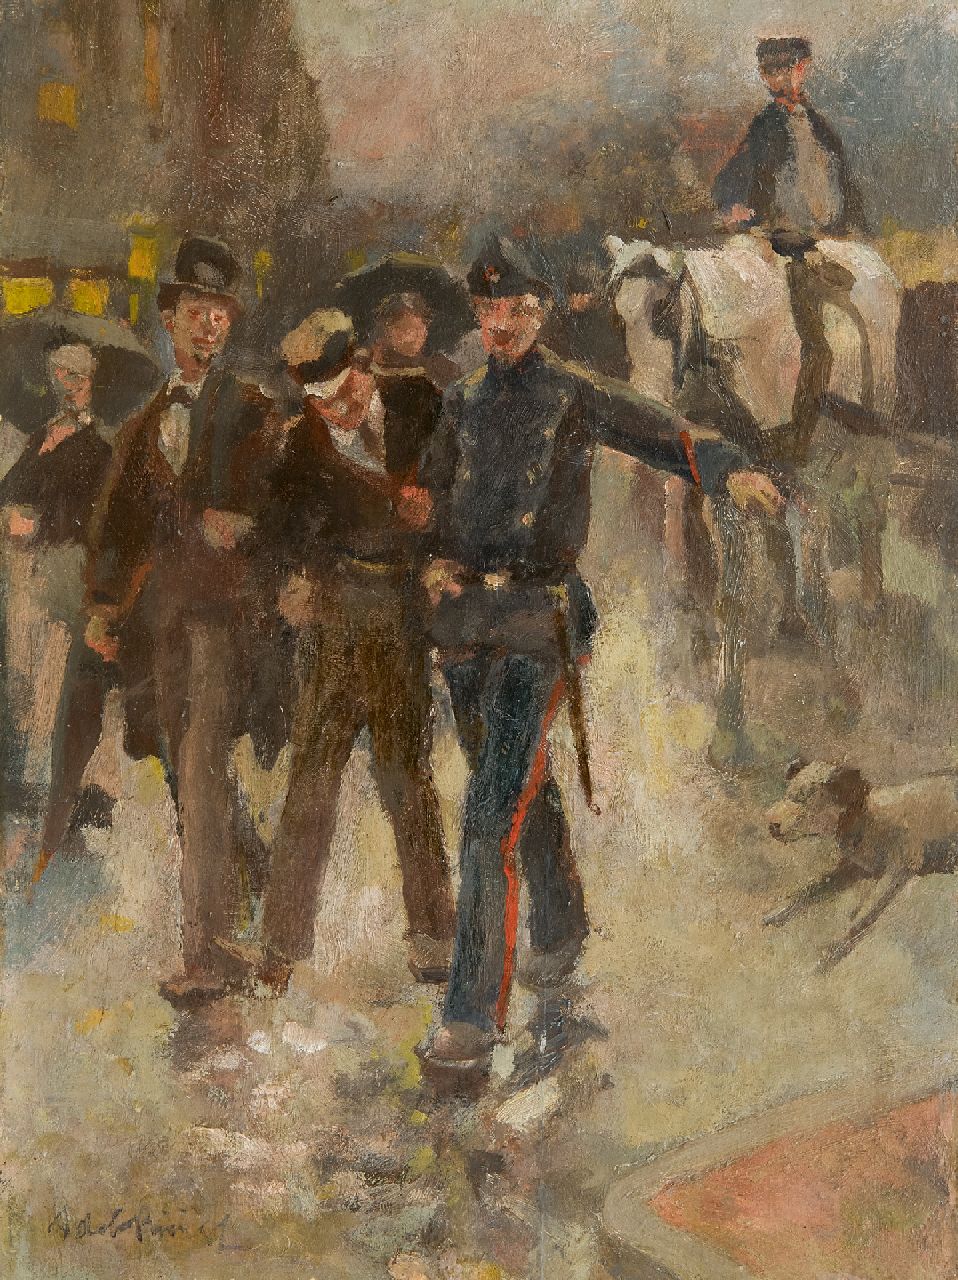 Rivière A.P. de la | Adrianus Philippus 'Adriaan' de la Rivière | Schilderijen te koop aangeboden | Onder arrest, olieverf op paneel 25,8 x 19,5 cm, gesigneerd linksonder